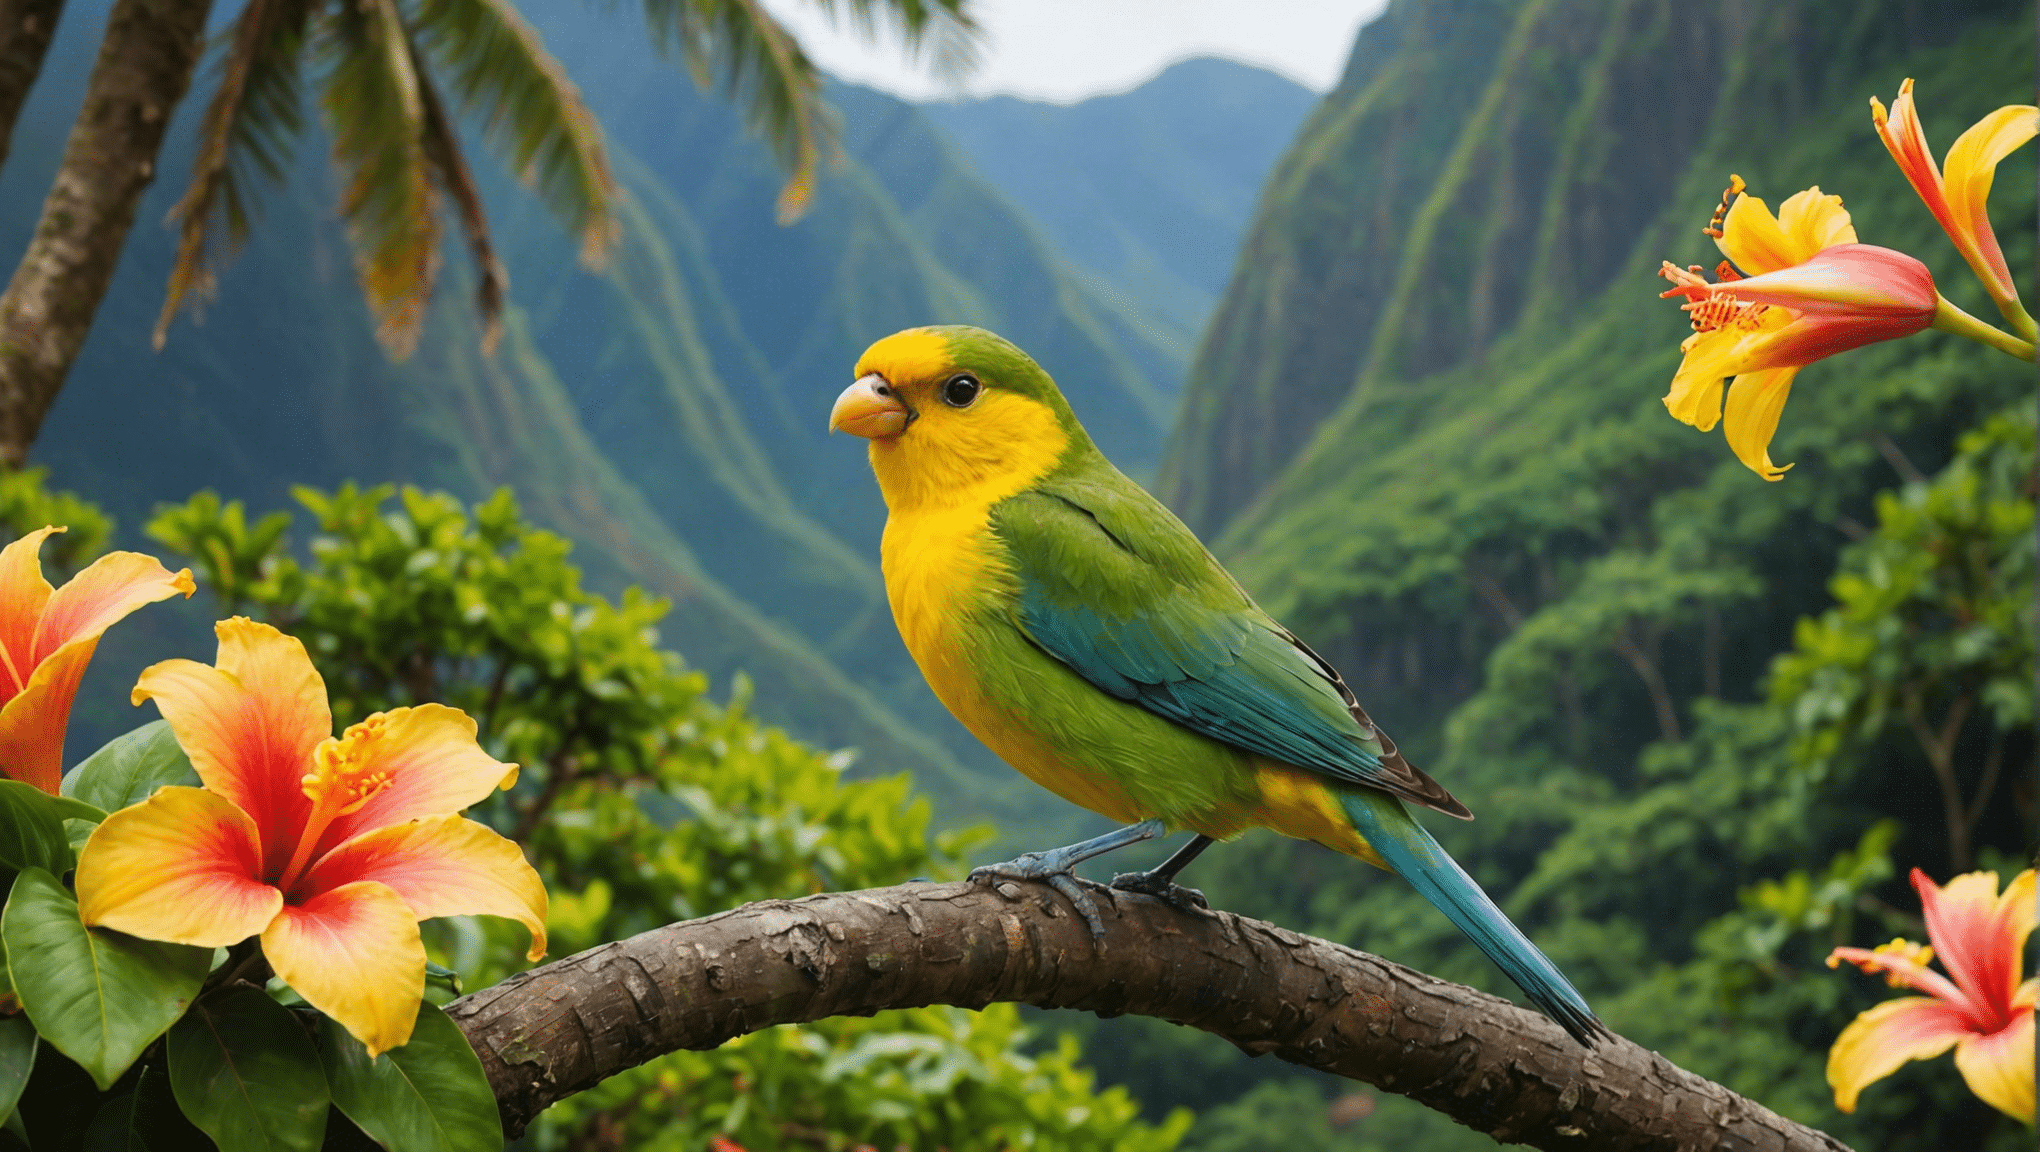 découvrez les espèces d'oiseaux distinctives d'Hawaï et leurs caractéristiques fascinantes. explorez la faune aviaire unique de cette île paradisiaque.